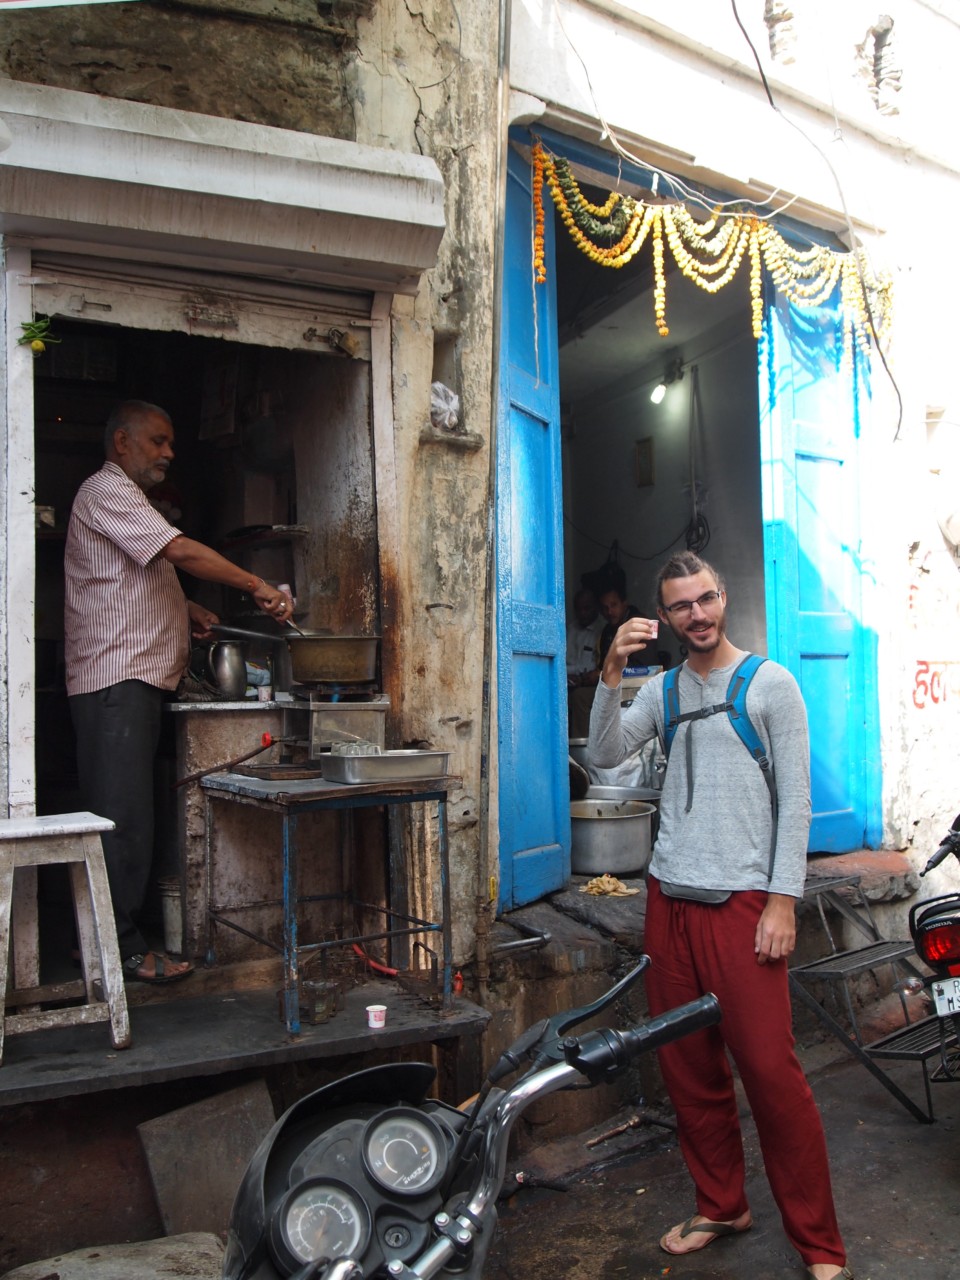 Überall gibt es in Indien kleine Stände, wo Chai-Tee für umgerechnet ca 8 Cent verkauft wird.